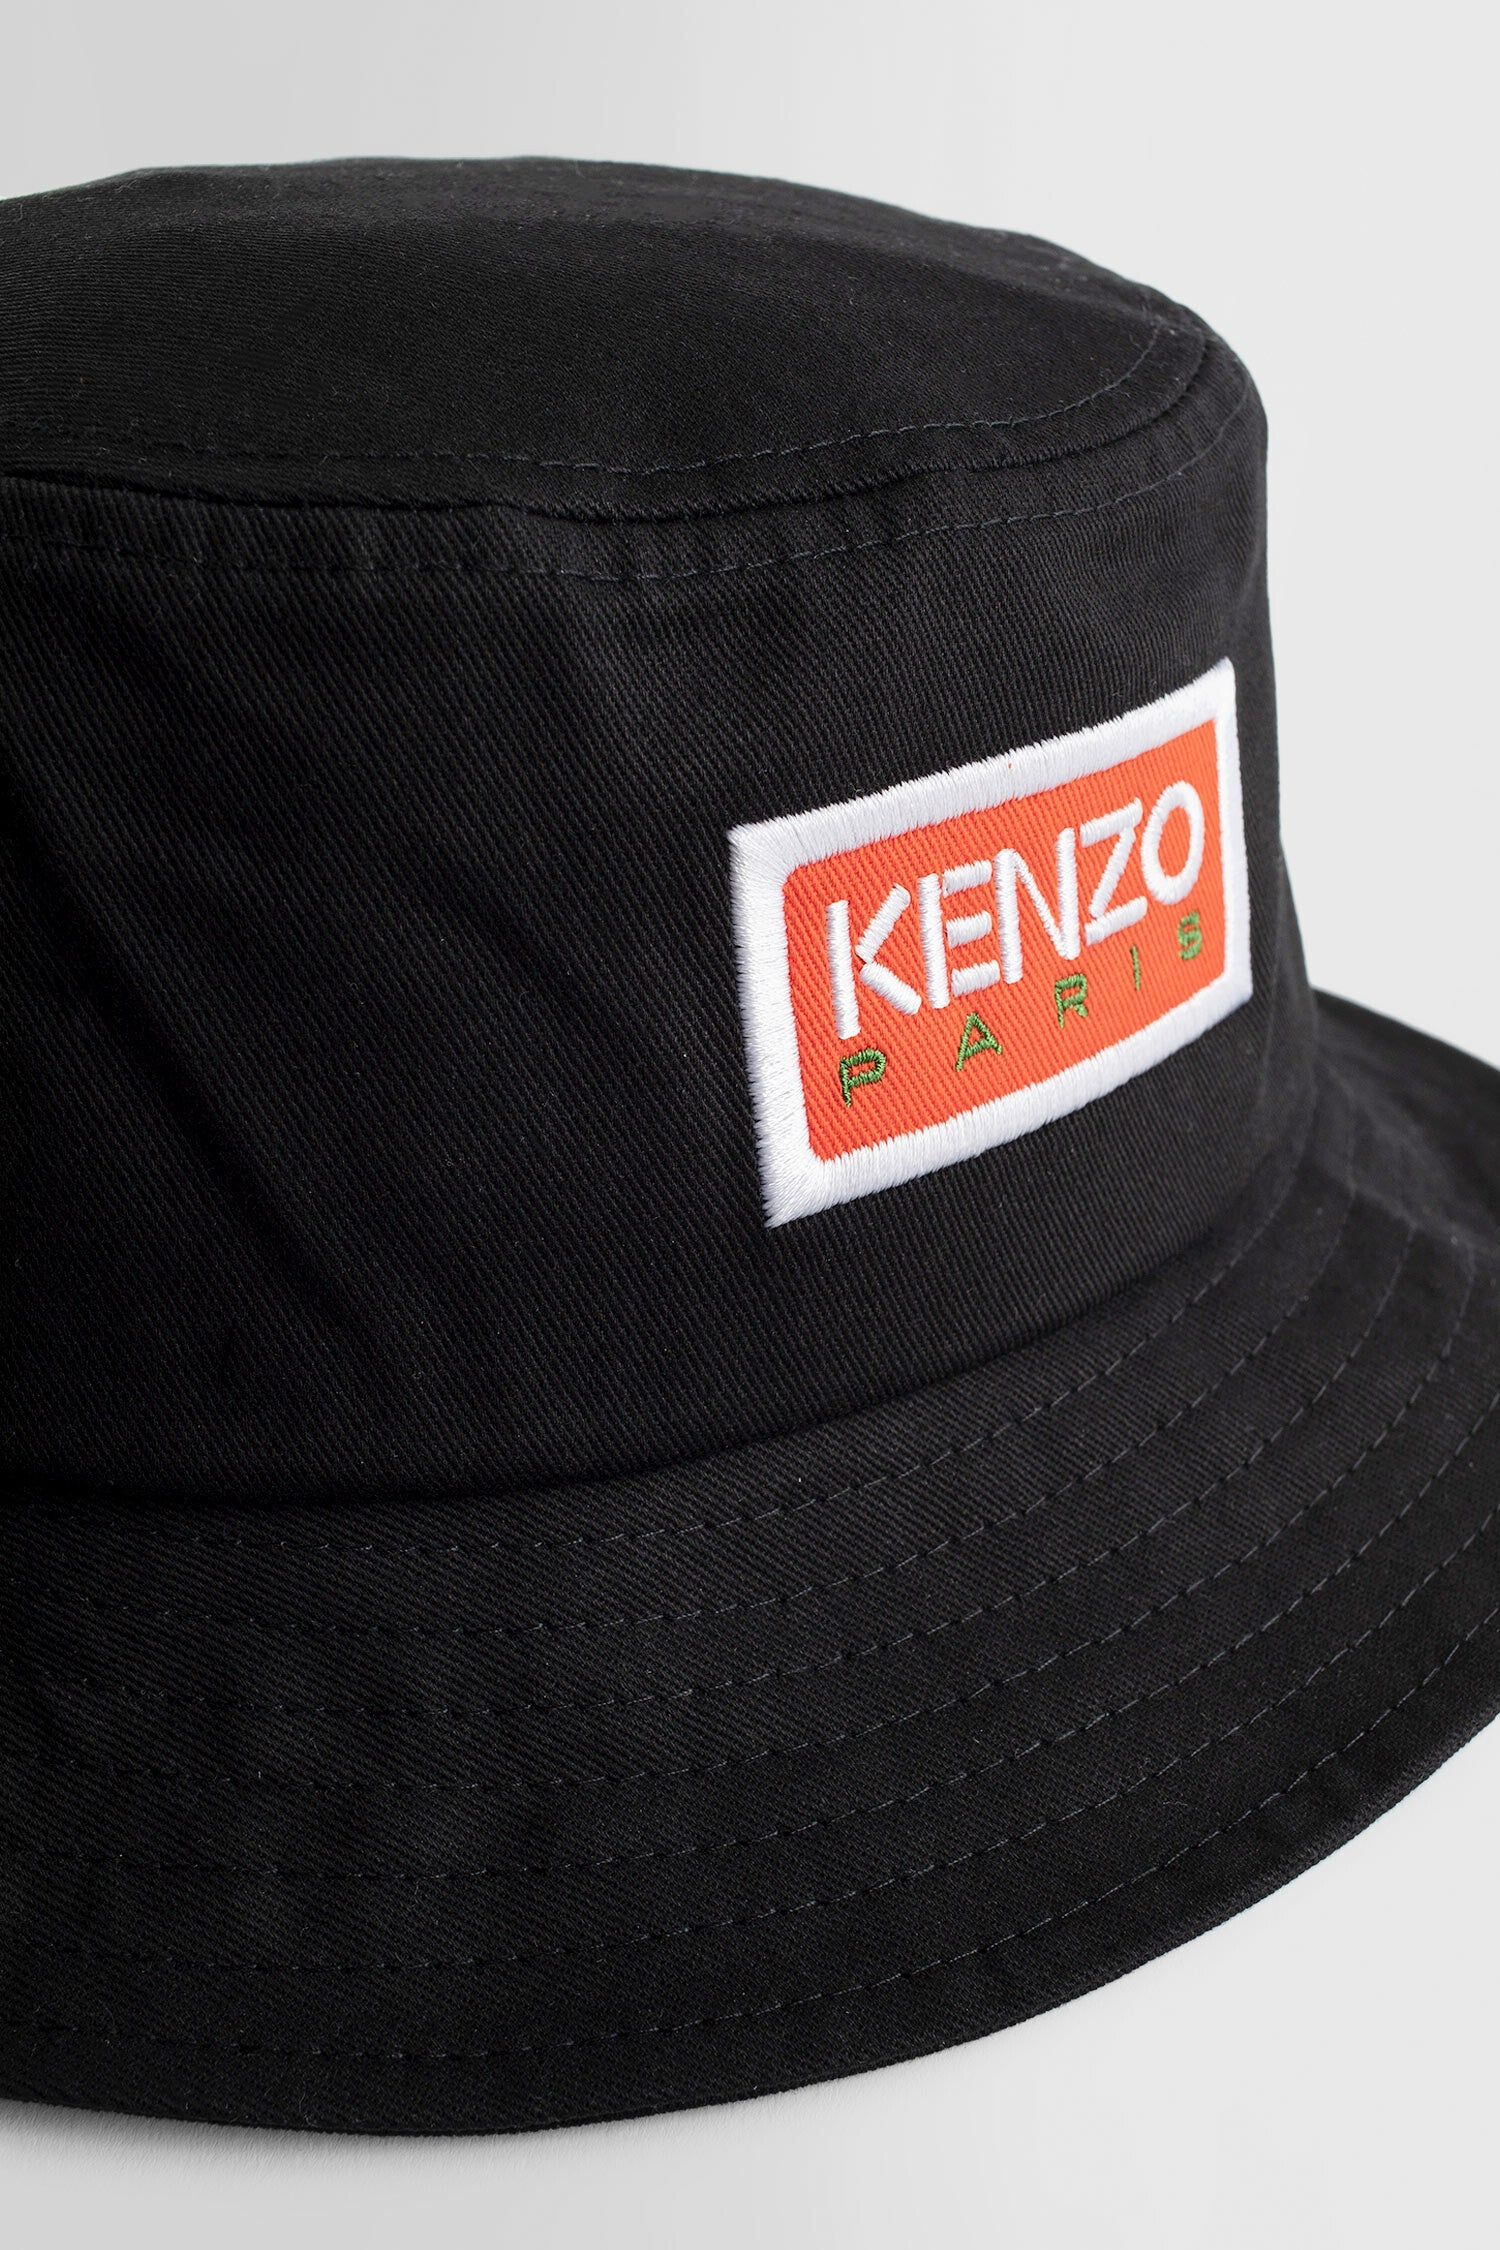 KENZO BY NIGO MAN BLACK HATS - 3